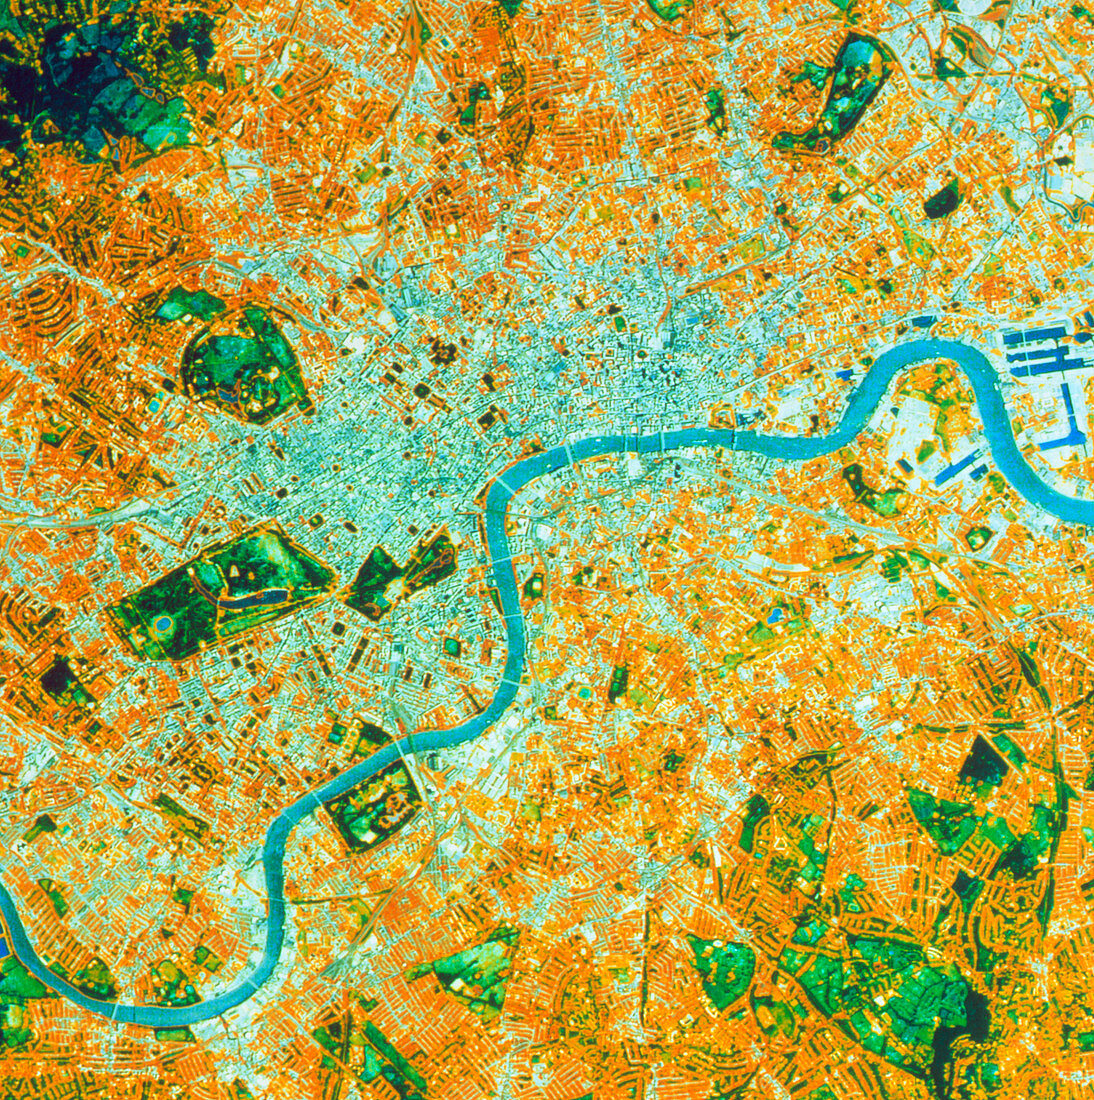 Landsat TM image of central London,England